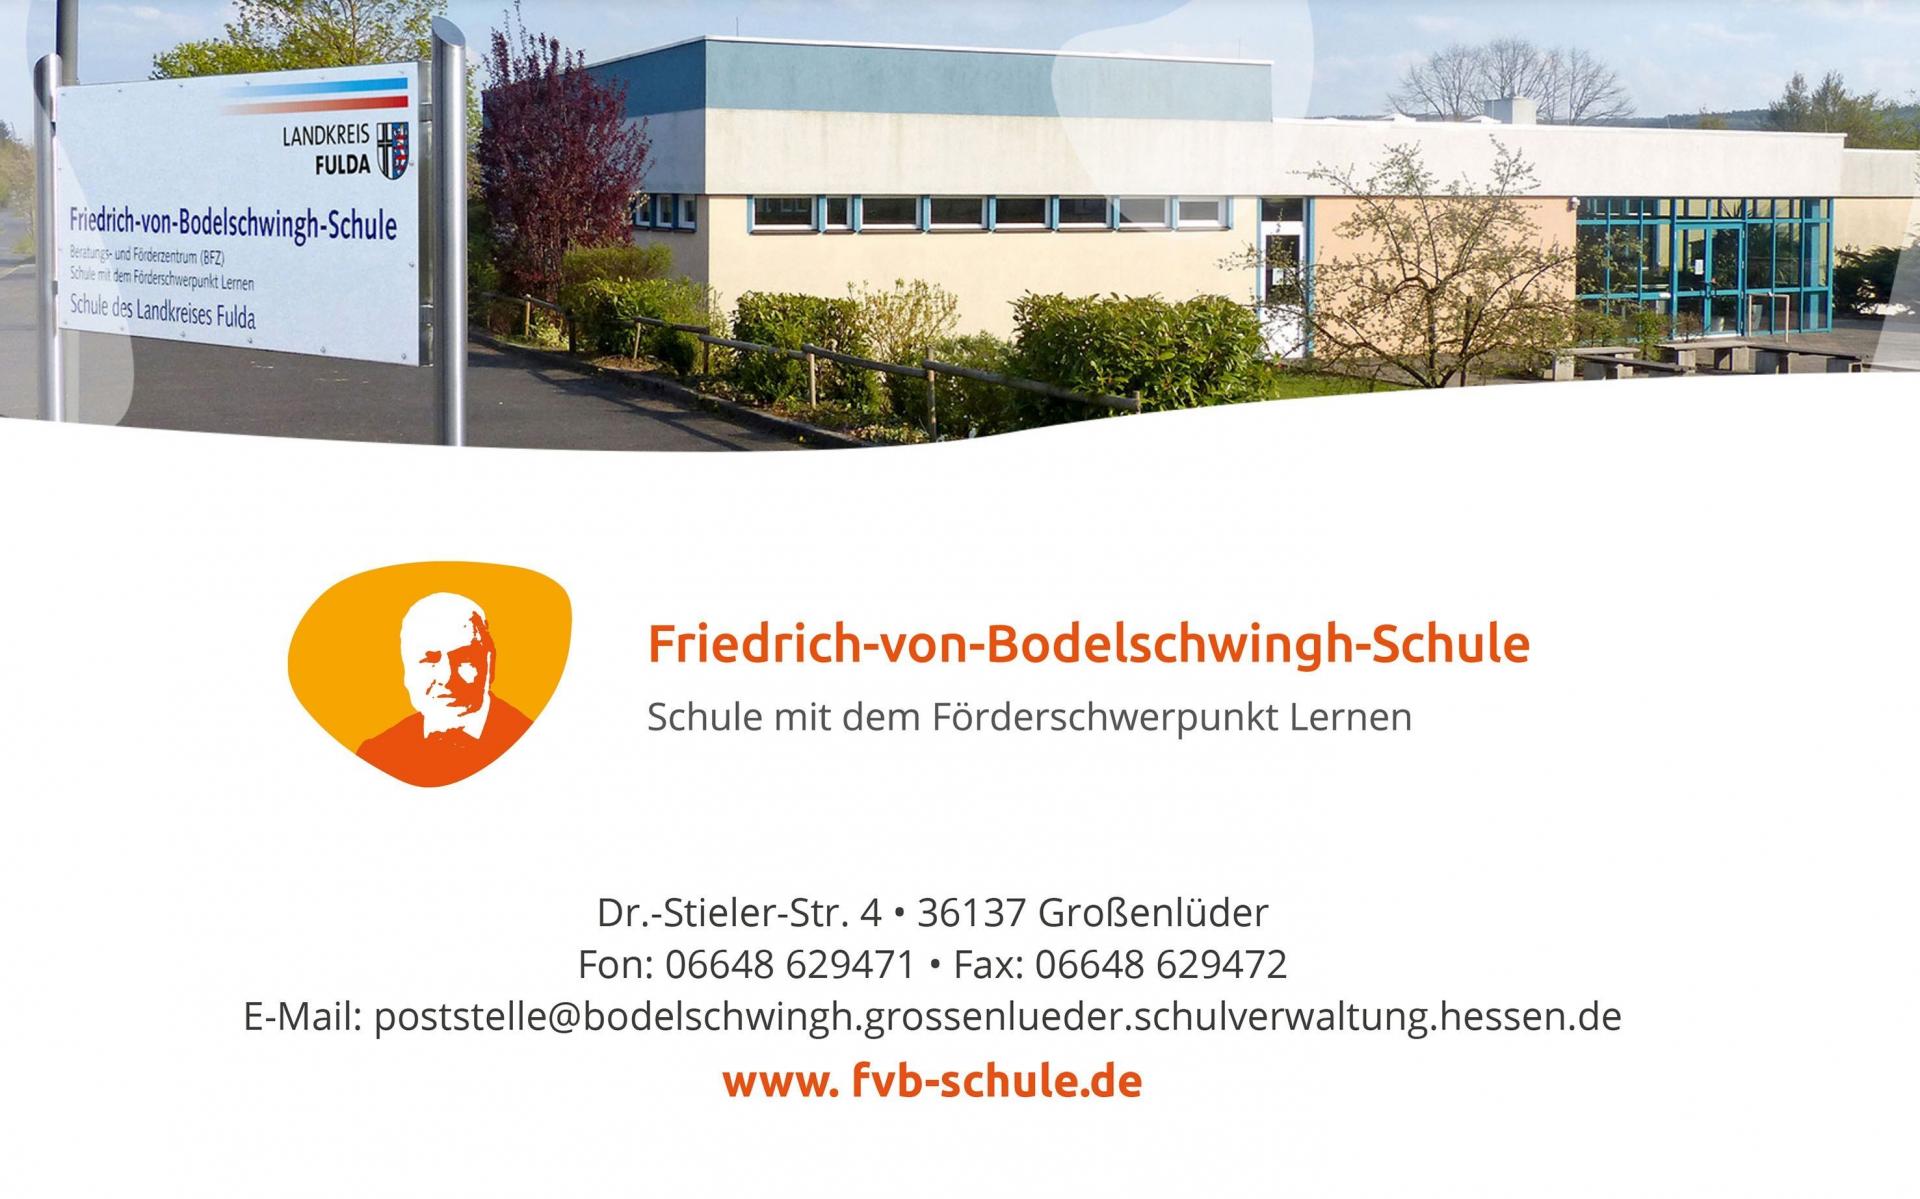 Friedrich-von-Bodelschwinghschule